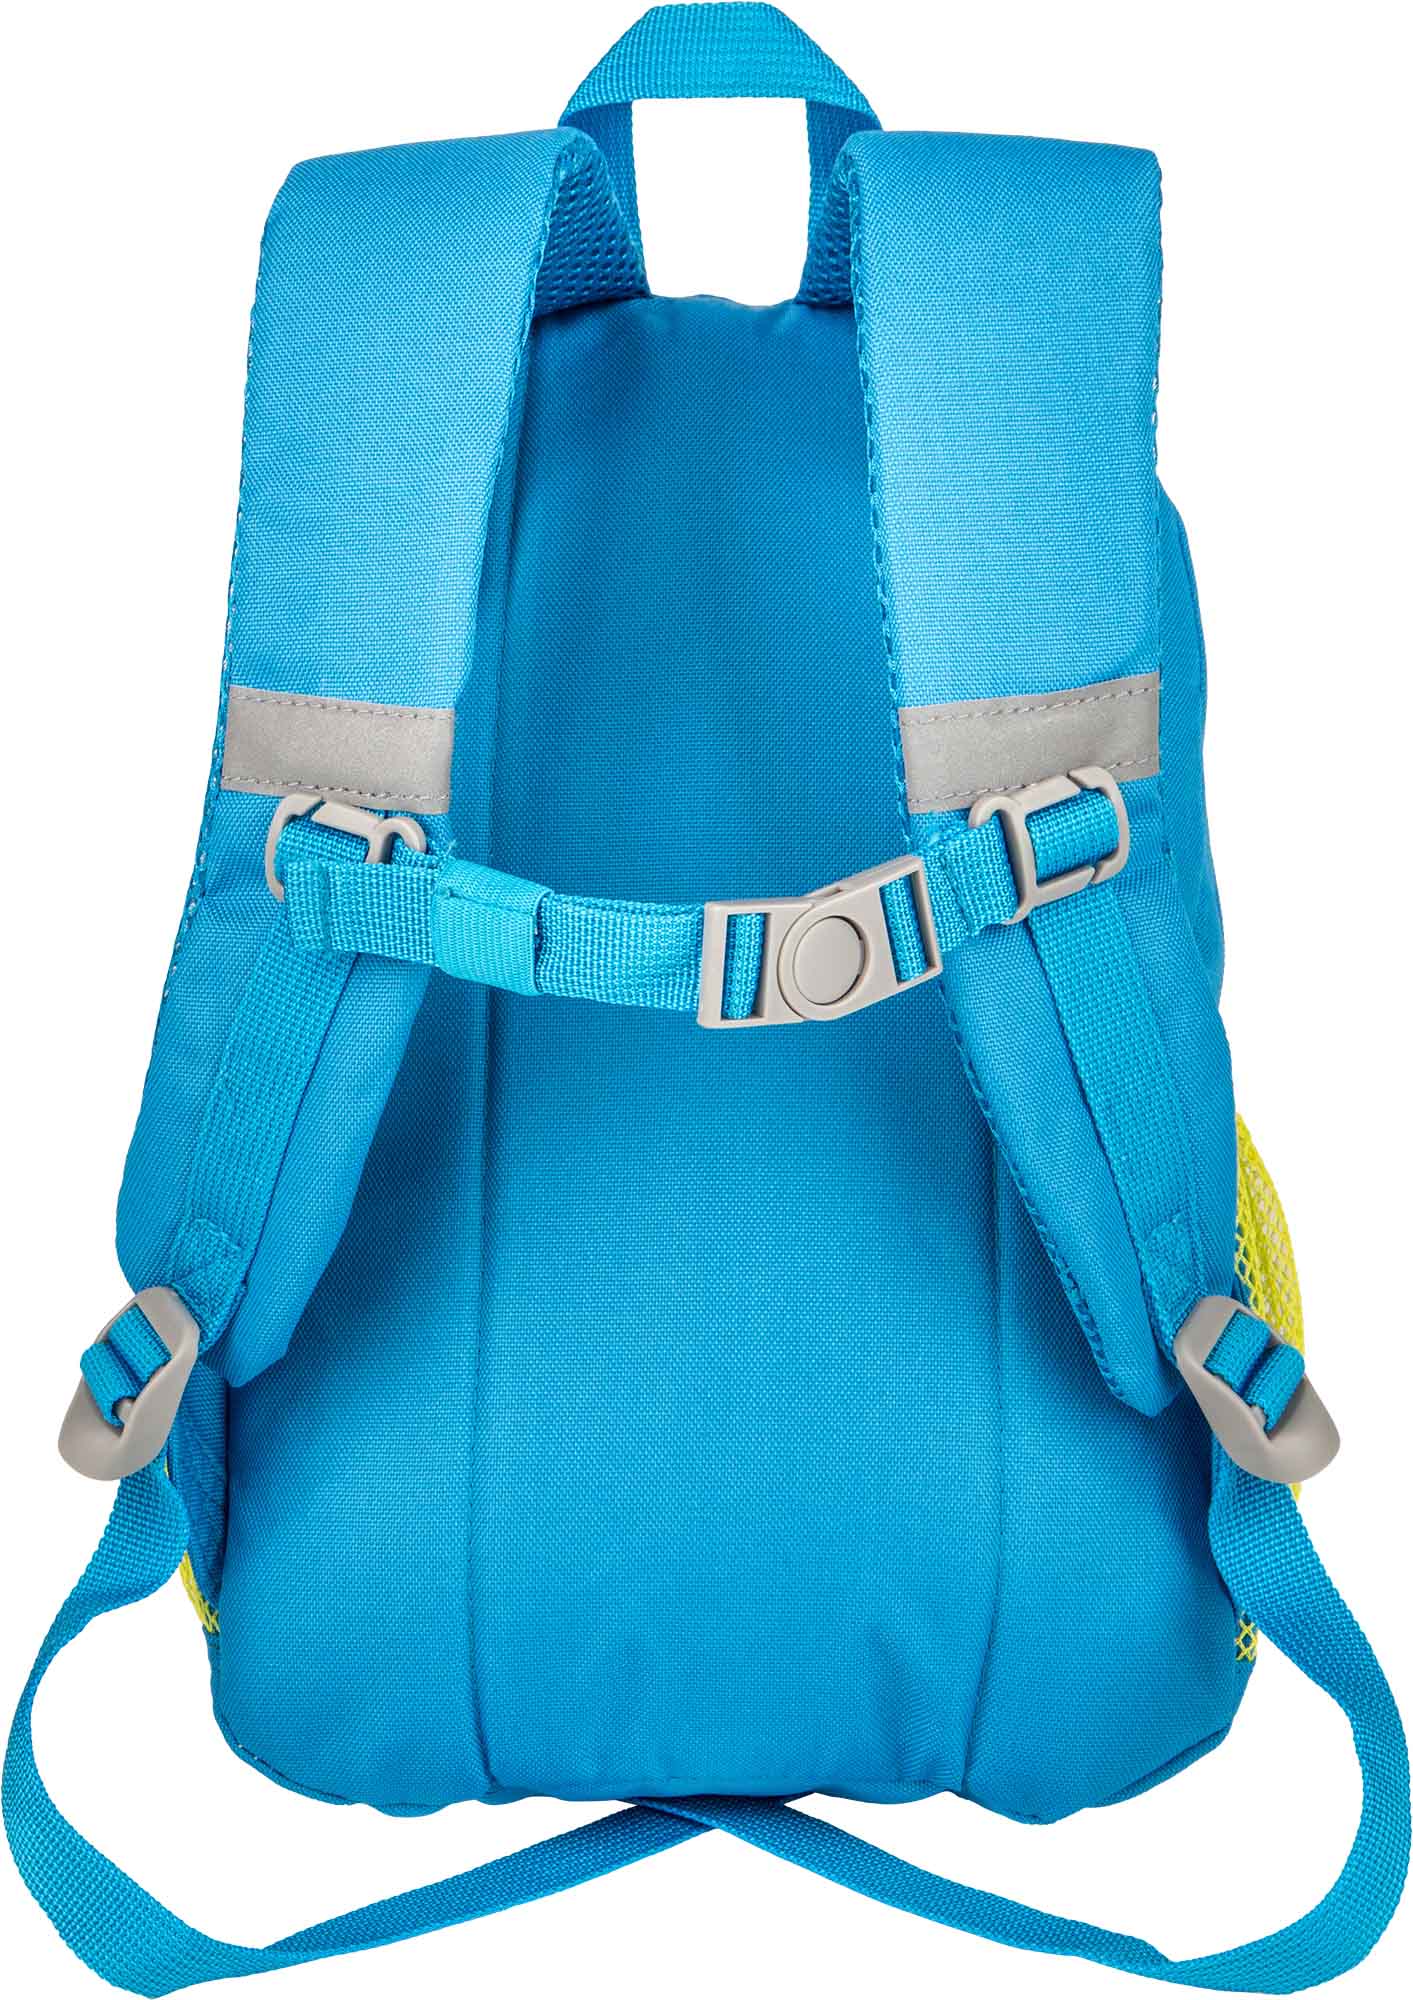 Children’s backpack